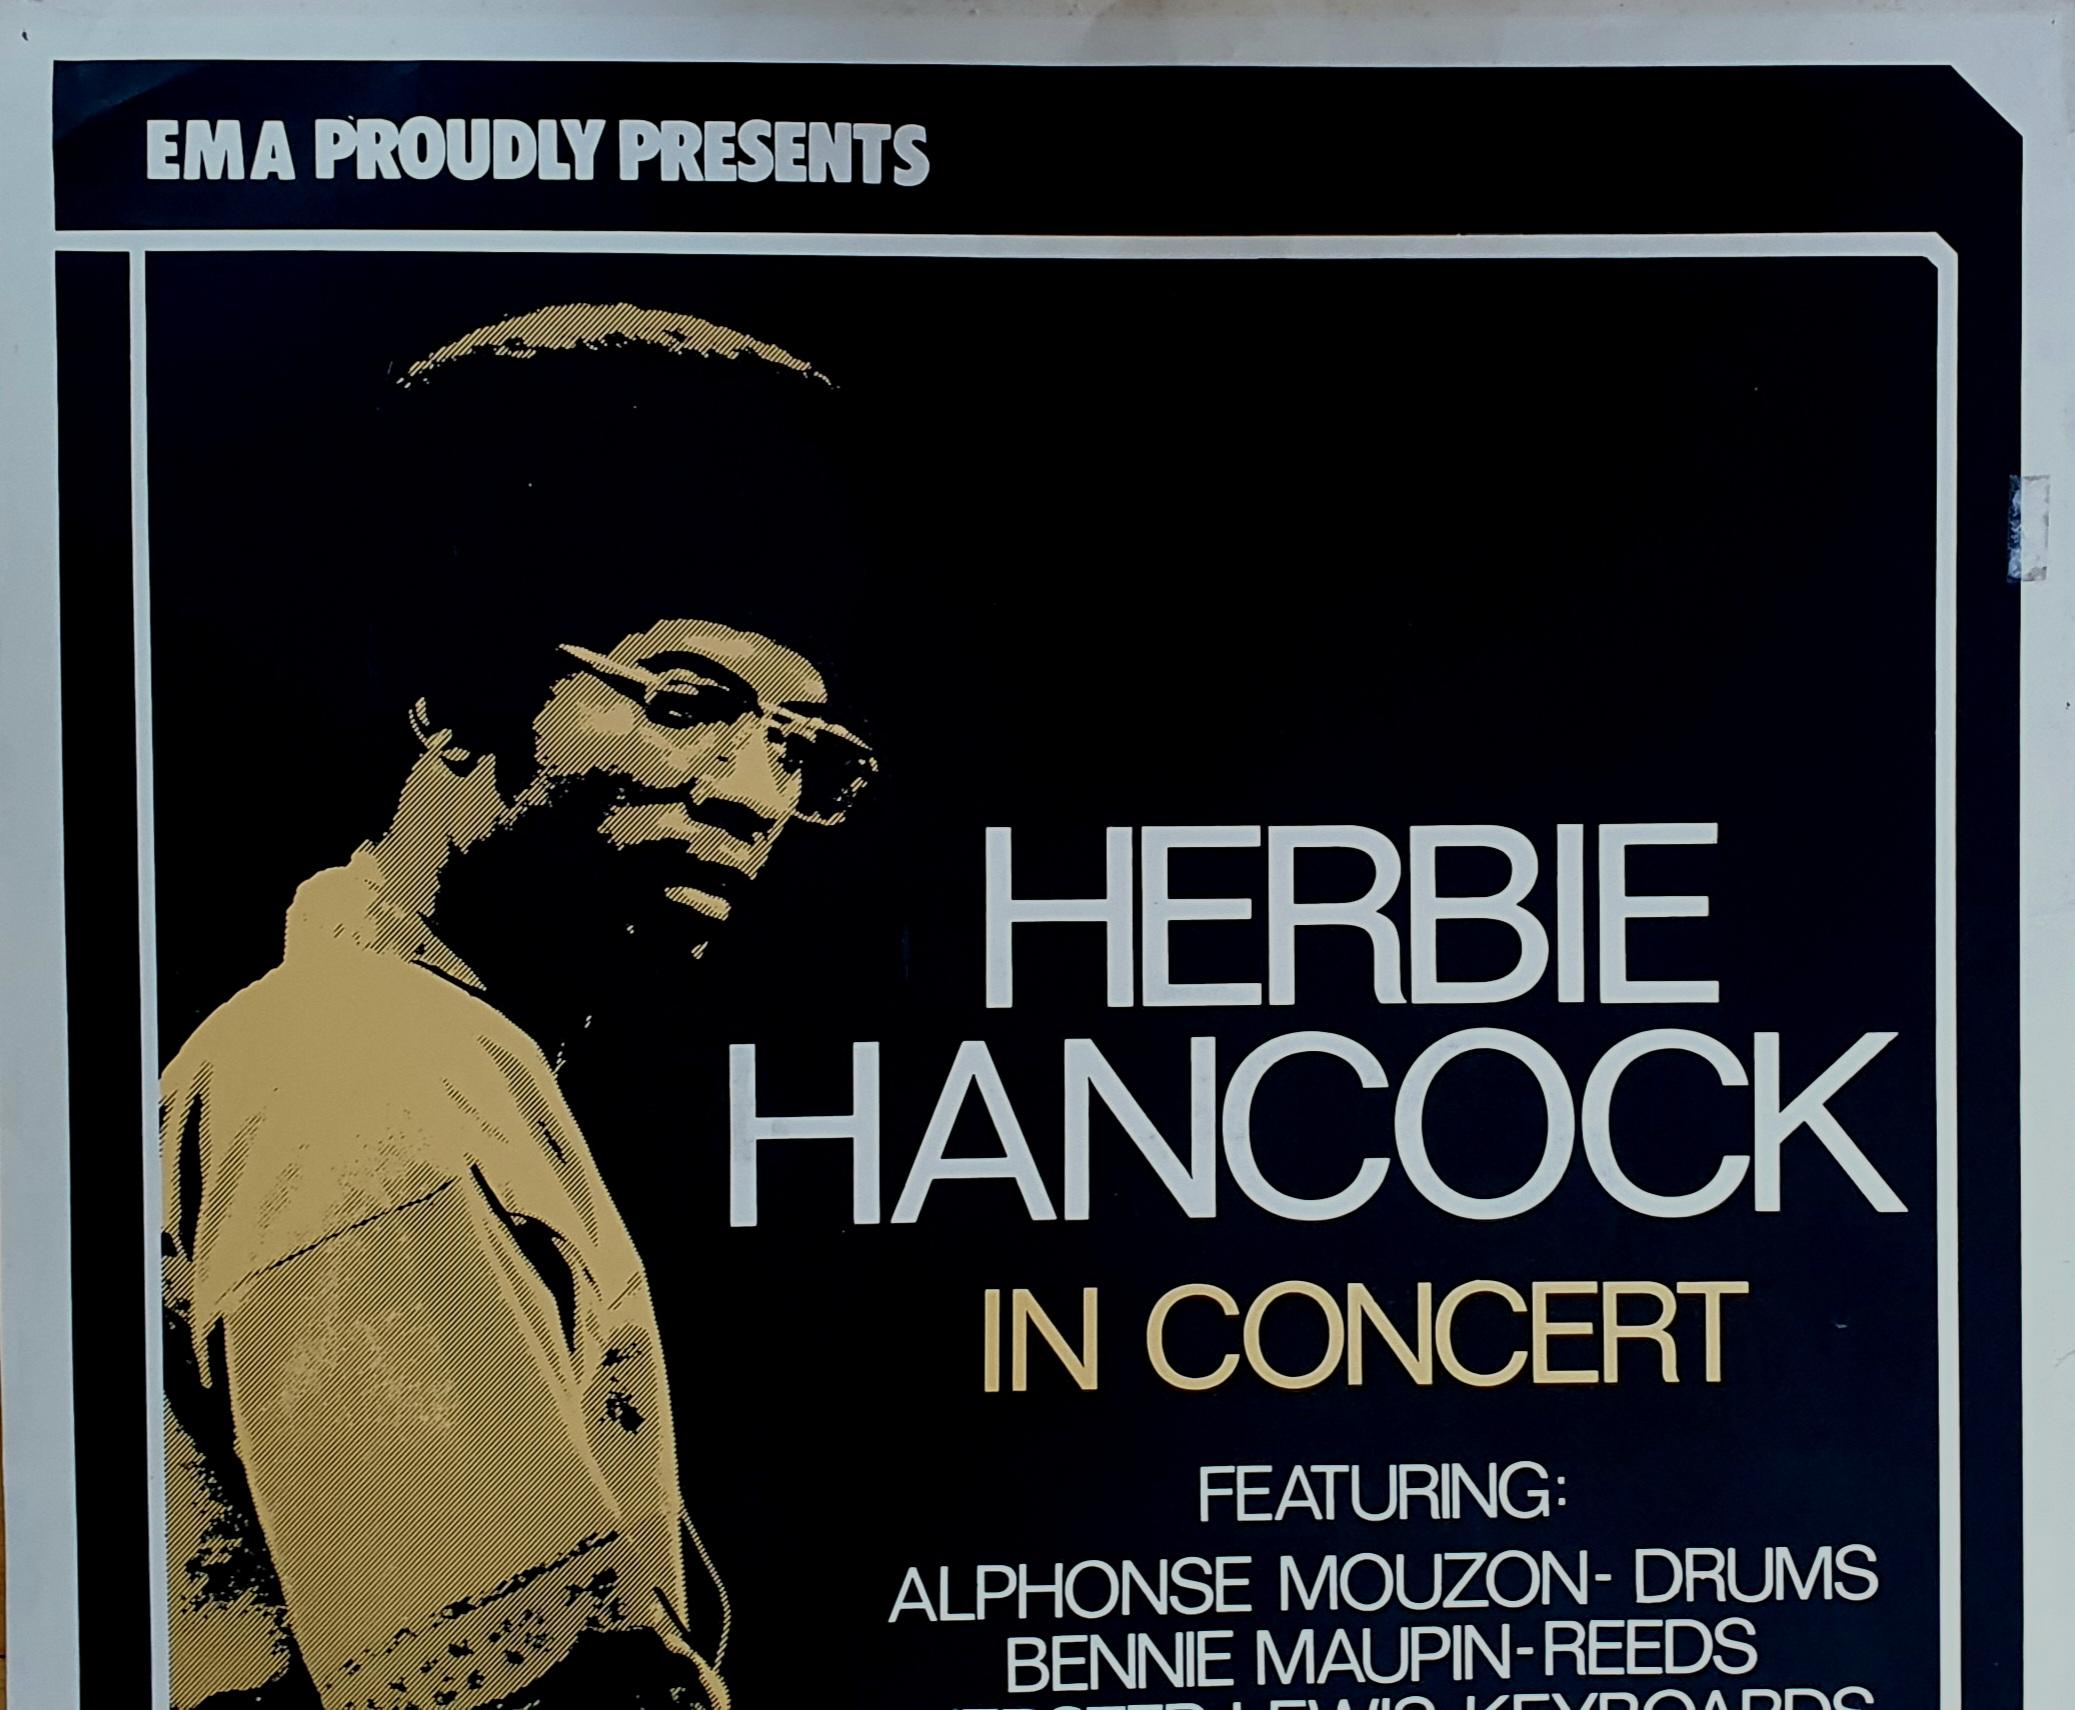 Originales Vintage-Werbeplakat für ein Konzert von Herbie Hancock in der Tiviolis-Konzerthalle, Kopenhagen, Dänemark.

Im Jahr 1979 fand in Tivoli Gardens ein denkwürdiges Konzert mit dem legendären Jazzpianisten Herbie Hancocks statt. Das Ereignis